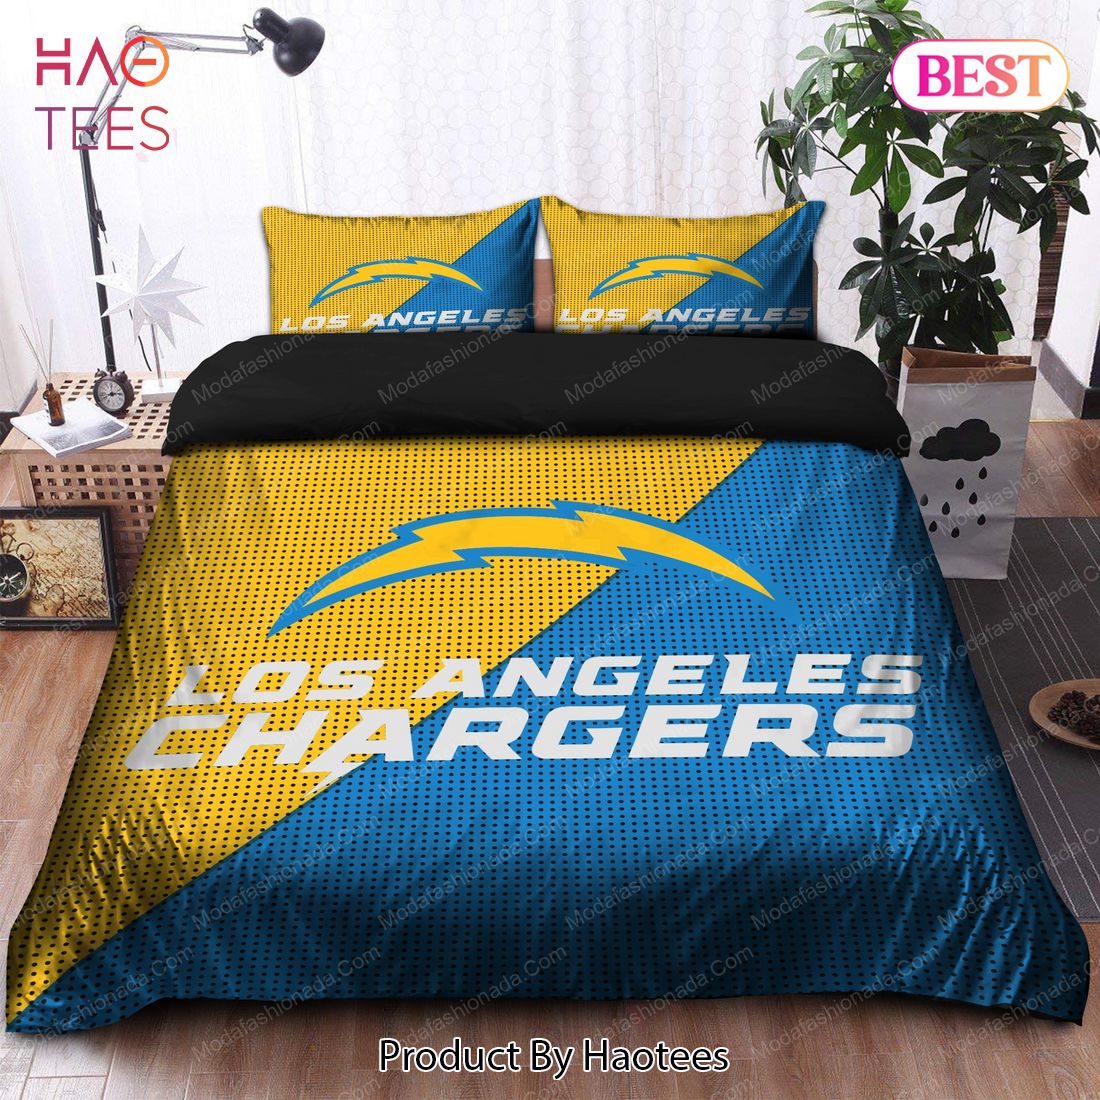 Buy Los Angeles Chargers Logo Bedding Sets Bed Sets, Bedroom Sets, Comforter Sets, Duvet Cover, Bedspread